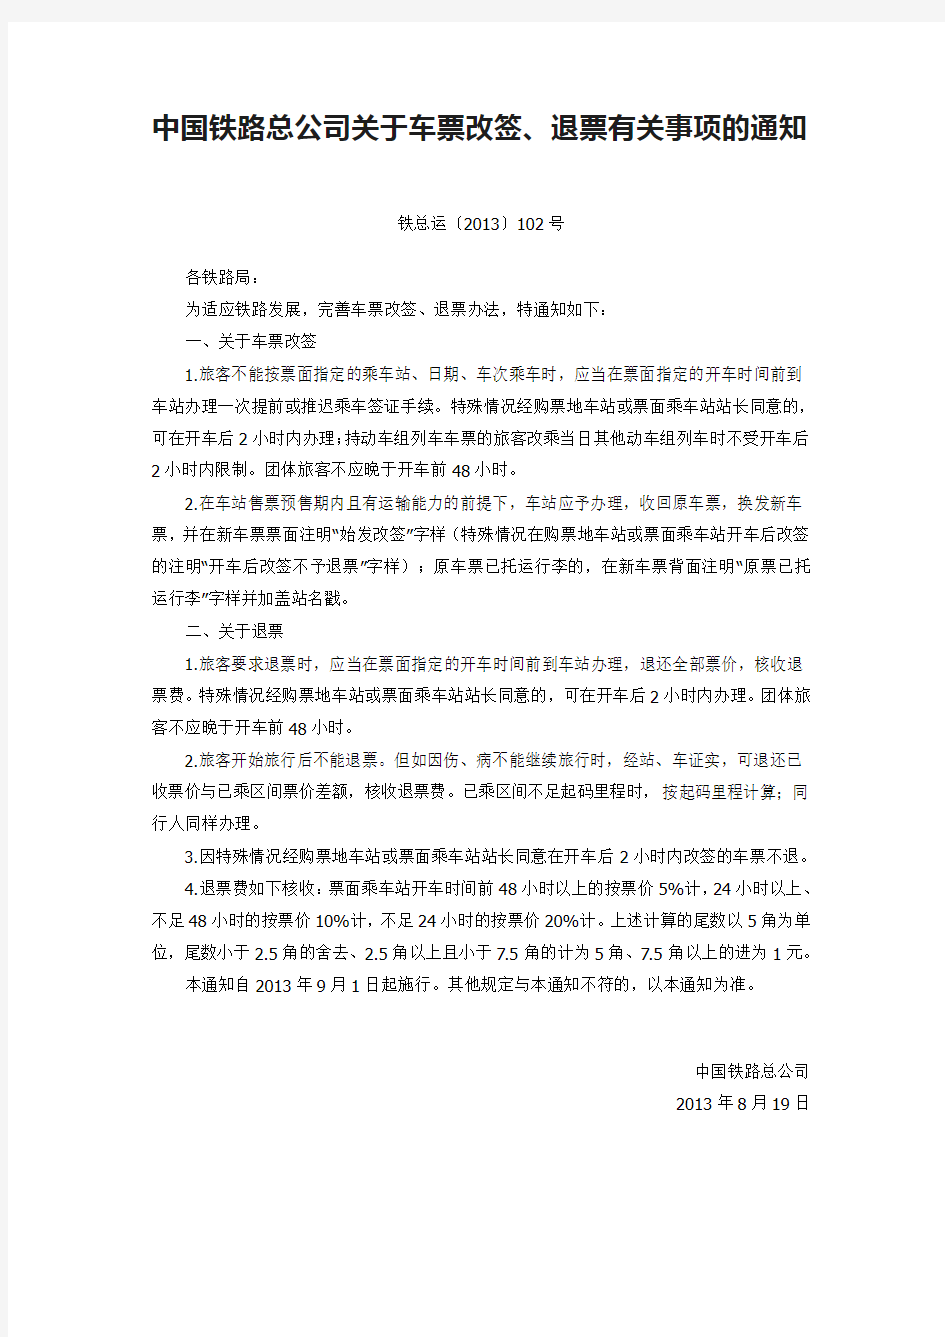 中国铁路总公司关于车票改签